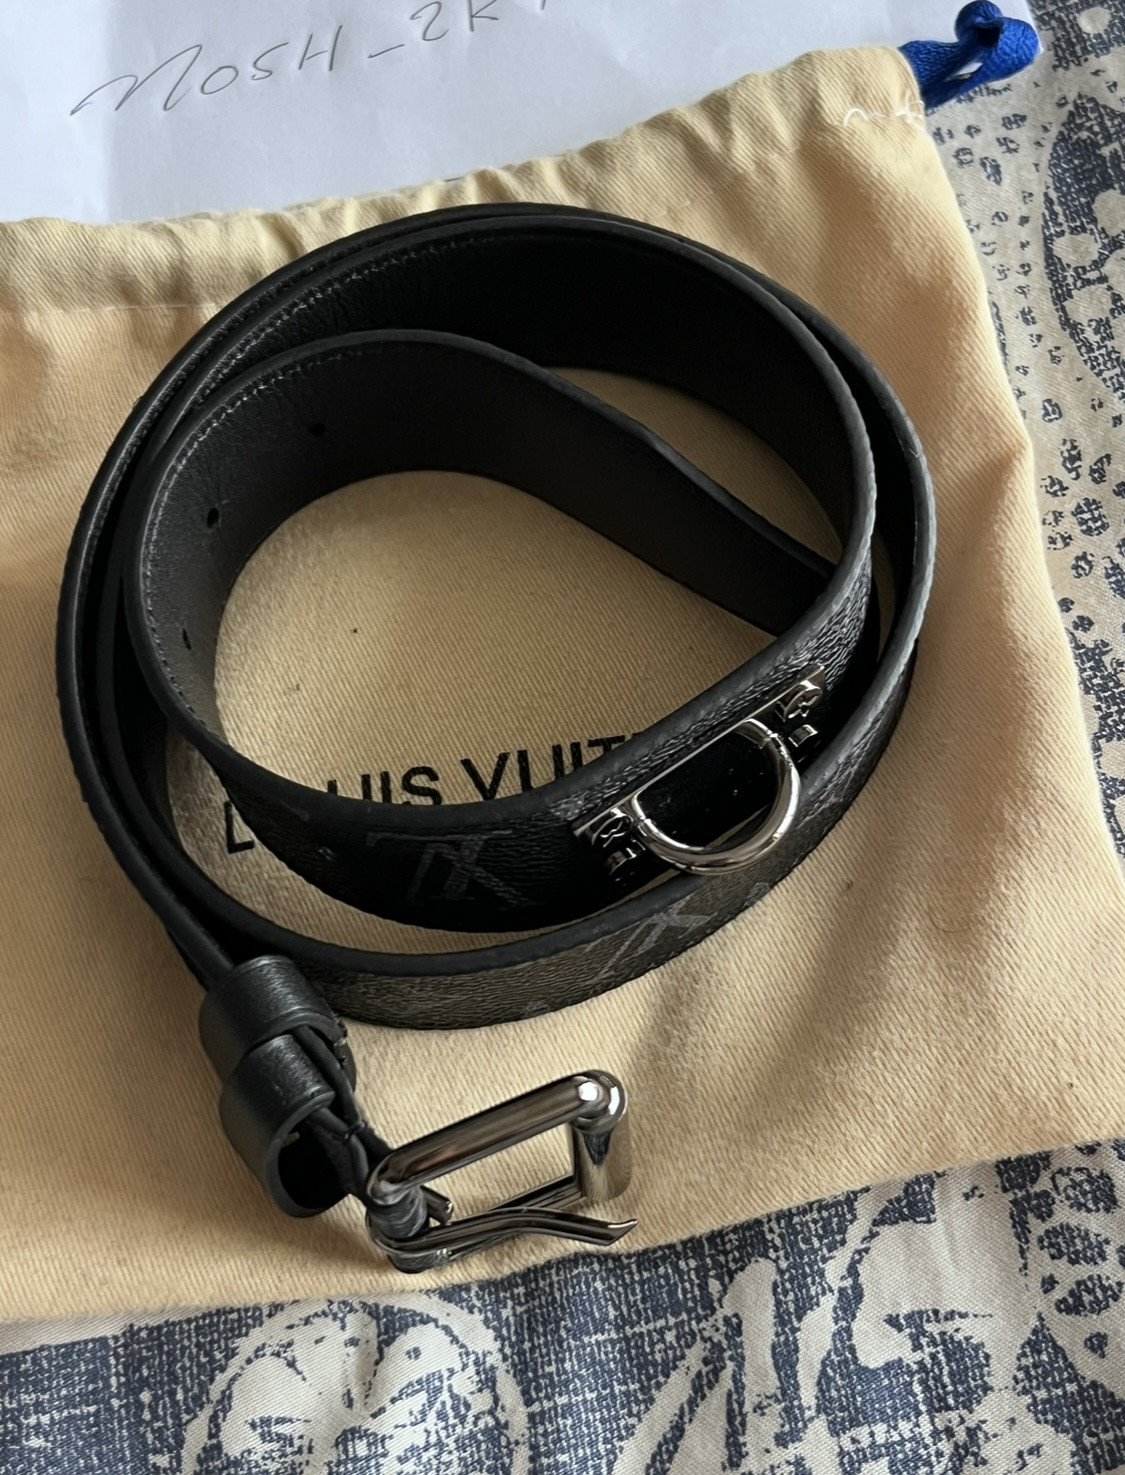 Part 1 - Louis Vuitton - Replica Accessories (Wallets, Belts, Keychains,  Gloves, Pouch etc)